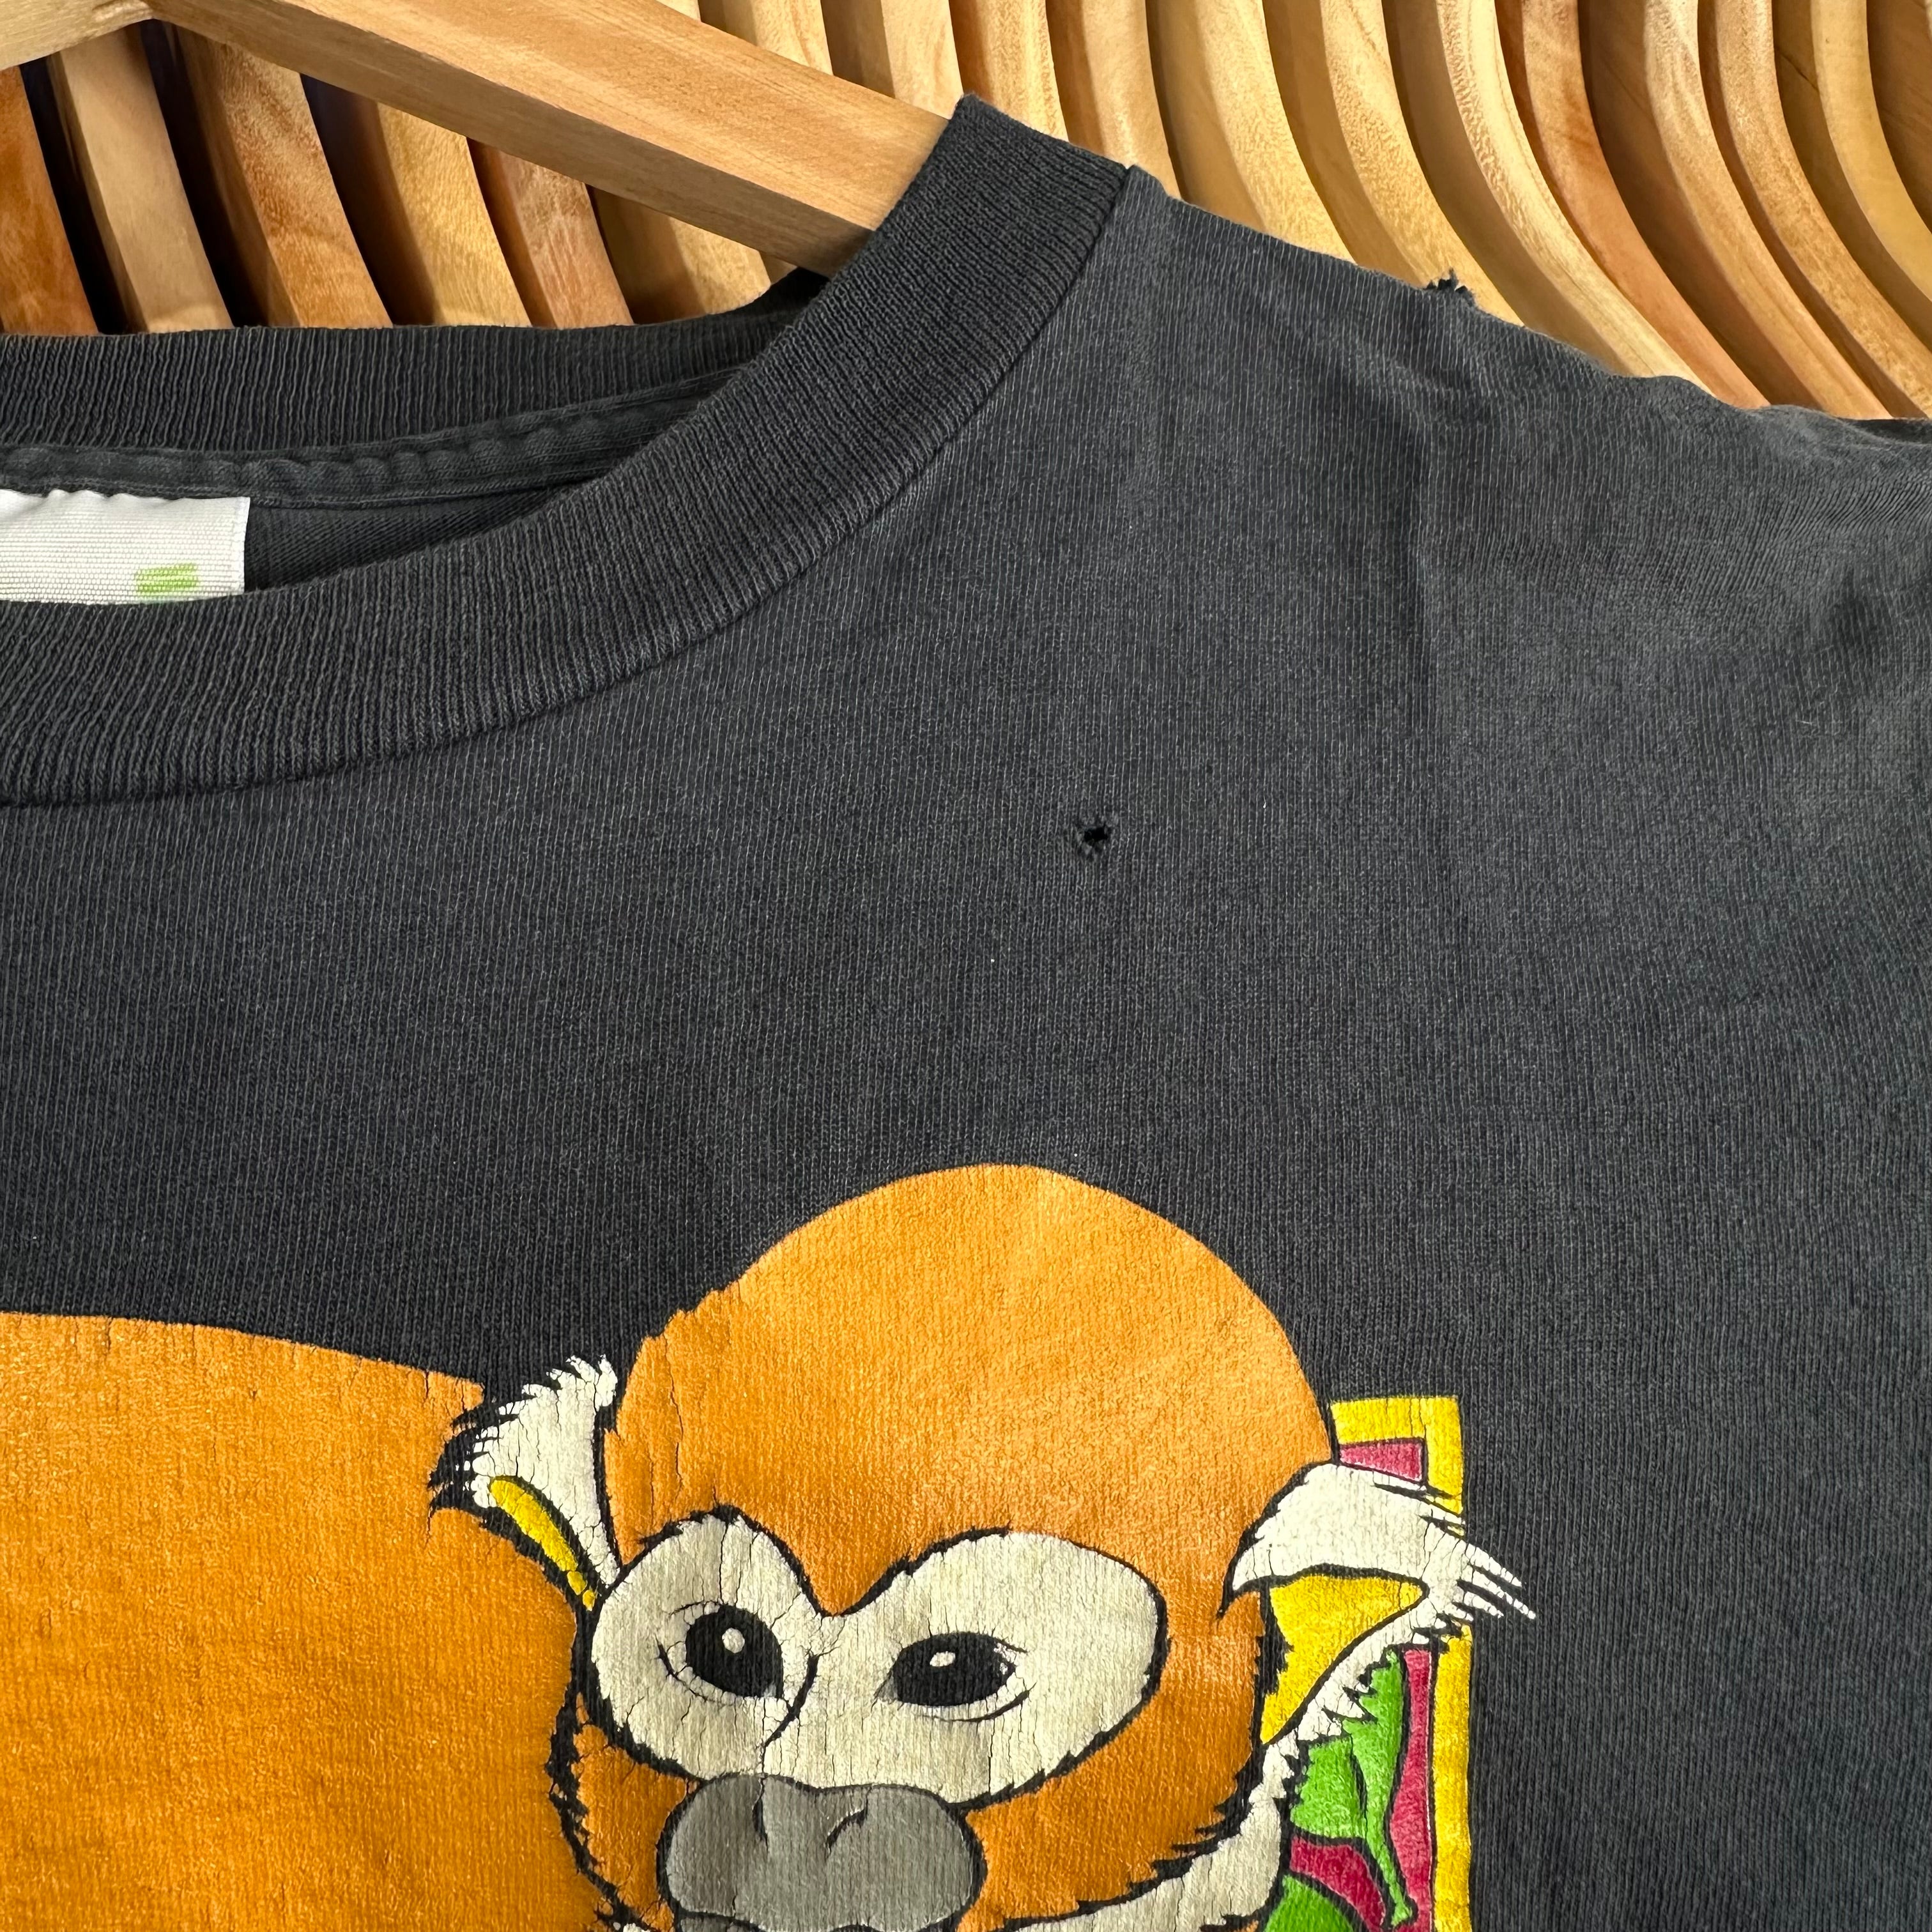 Squirrel Monkey T-Shirt